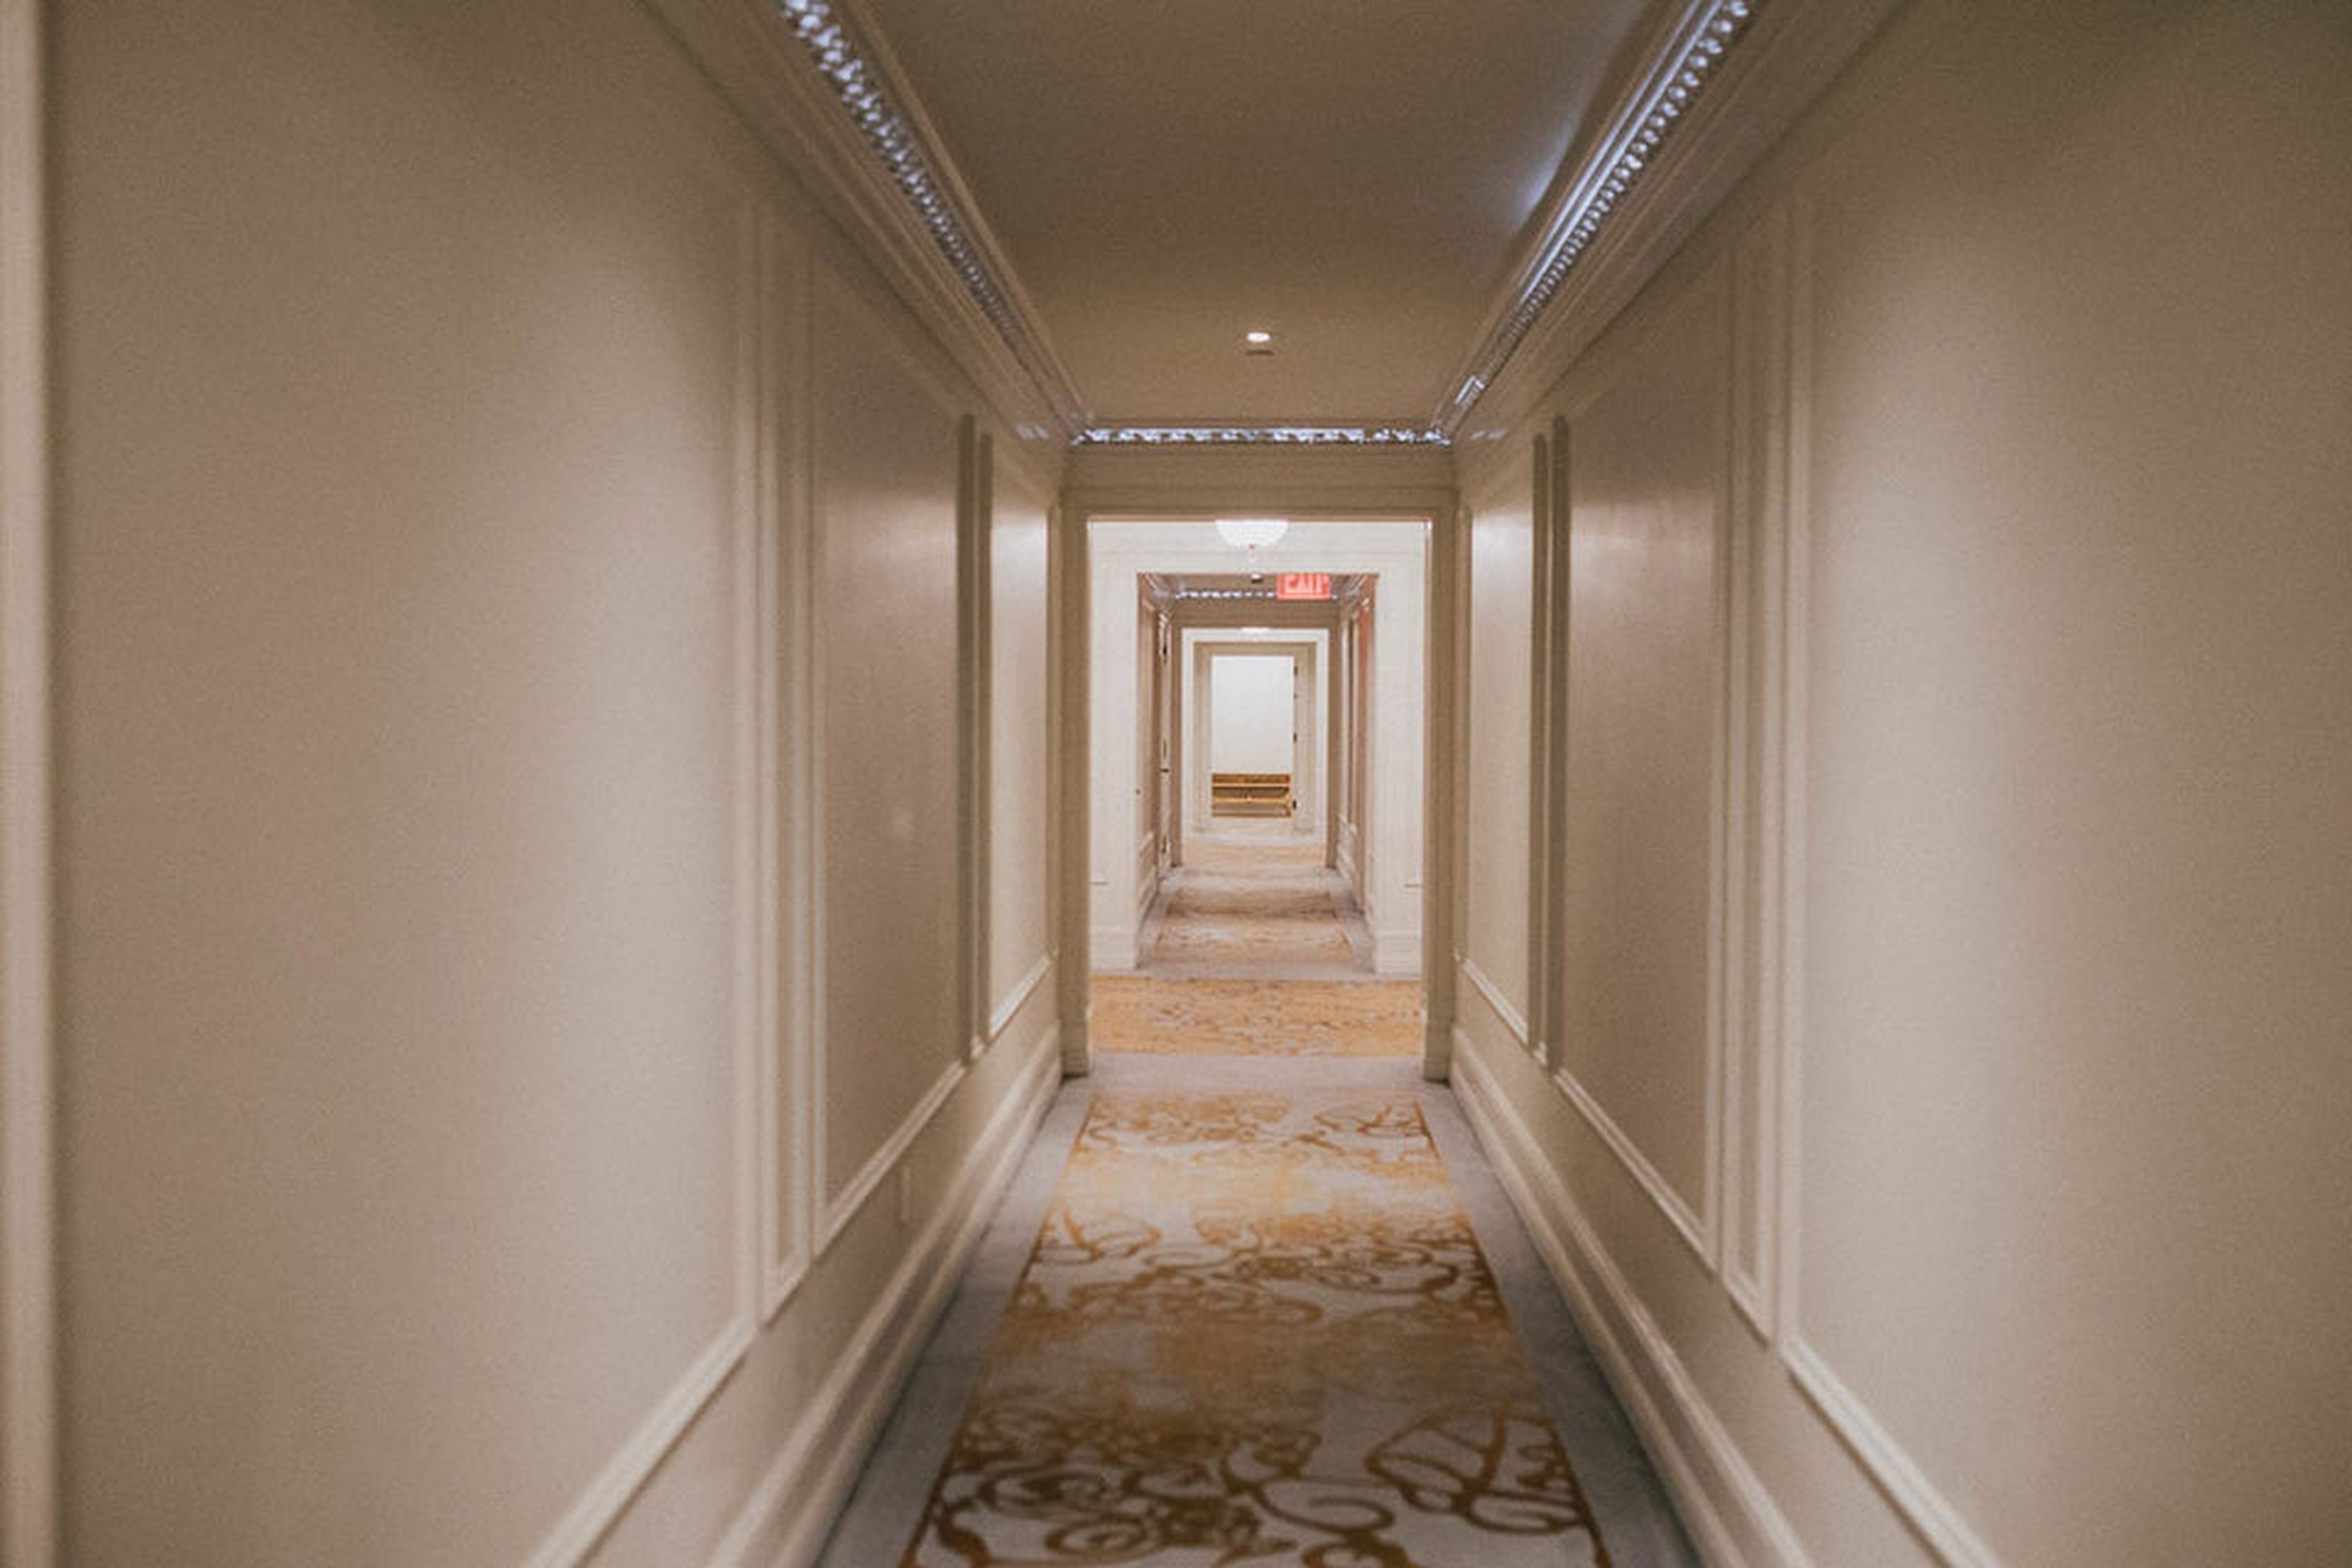 Los pasillos son sencillos, pero están elegantemente decorados. Cada espacio común del hotel huele como si hubiera sido perfumado con orquídeas.